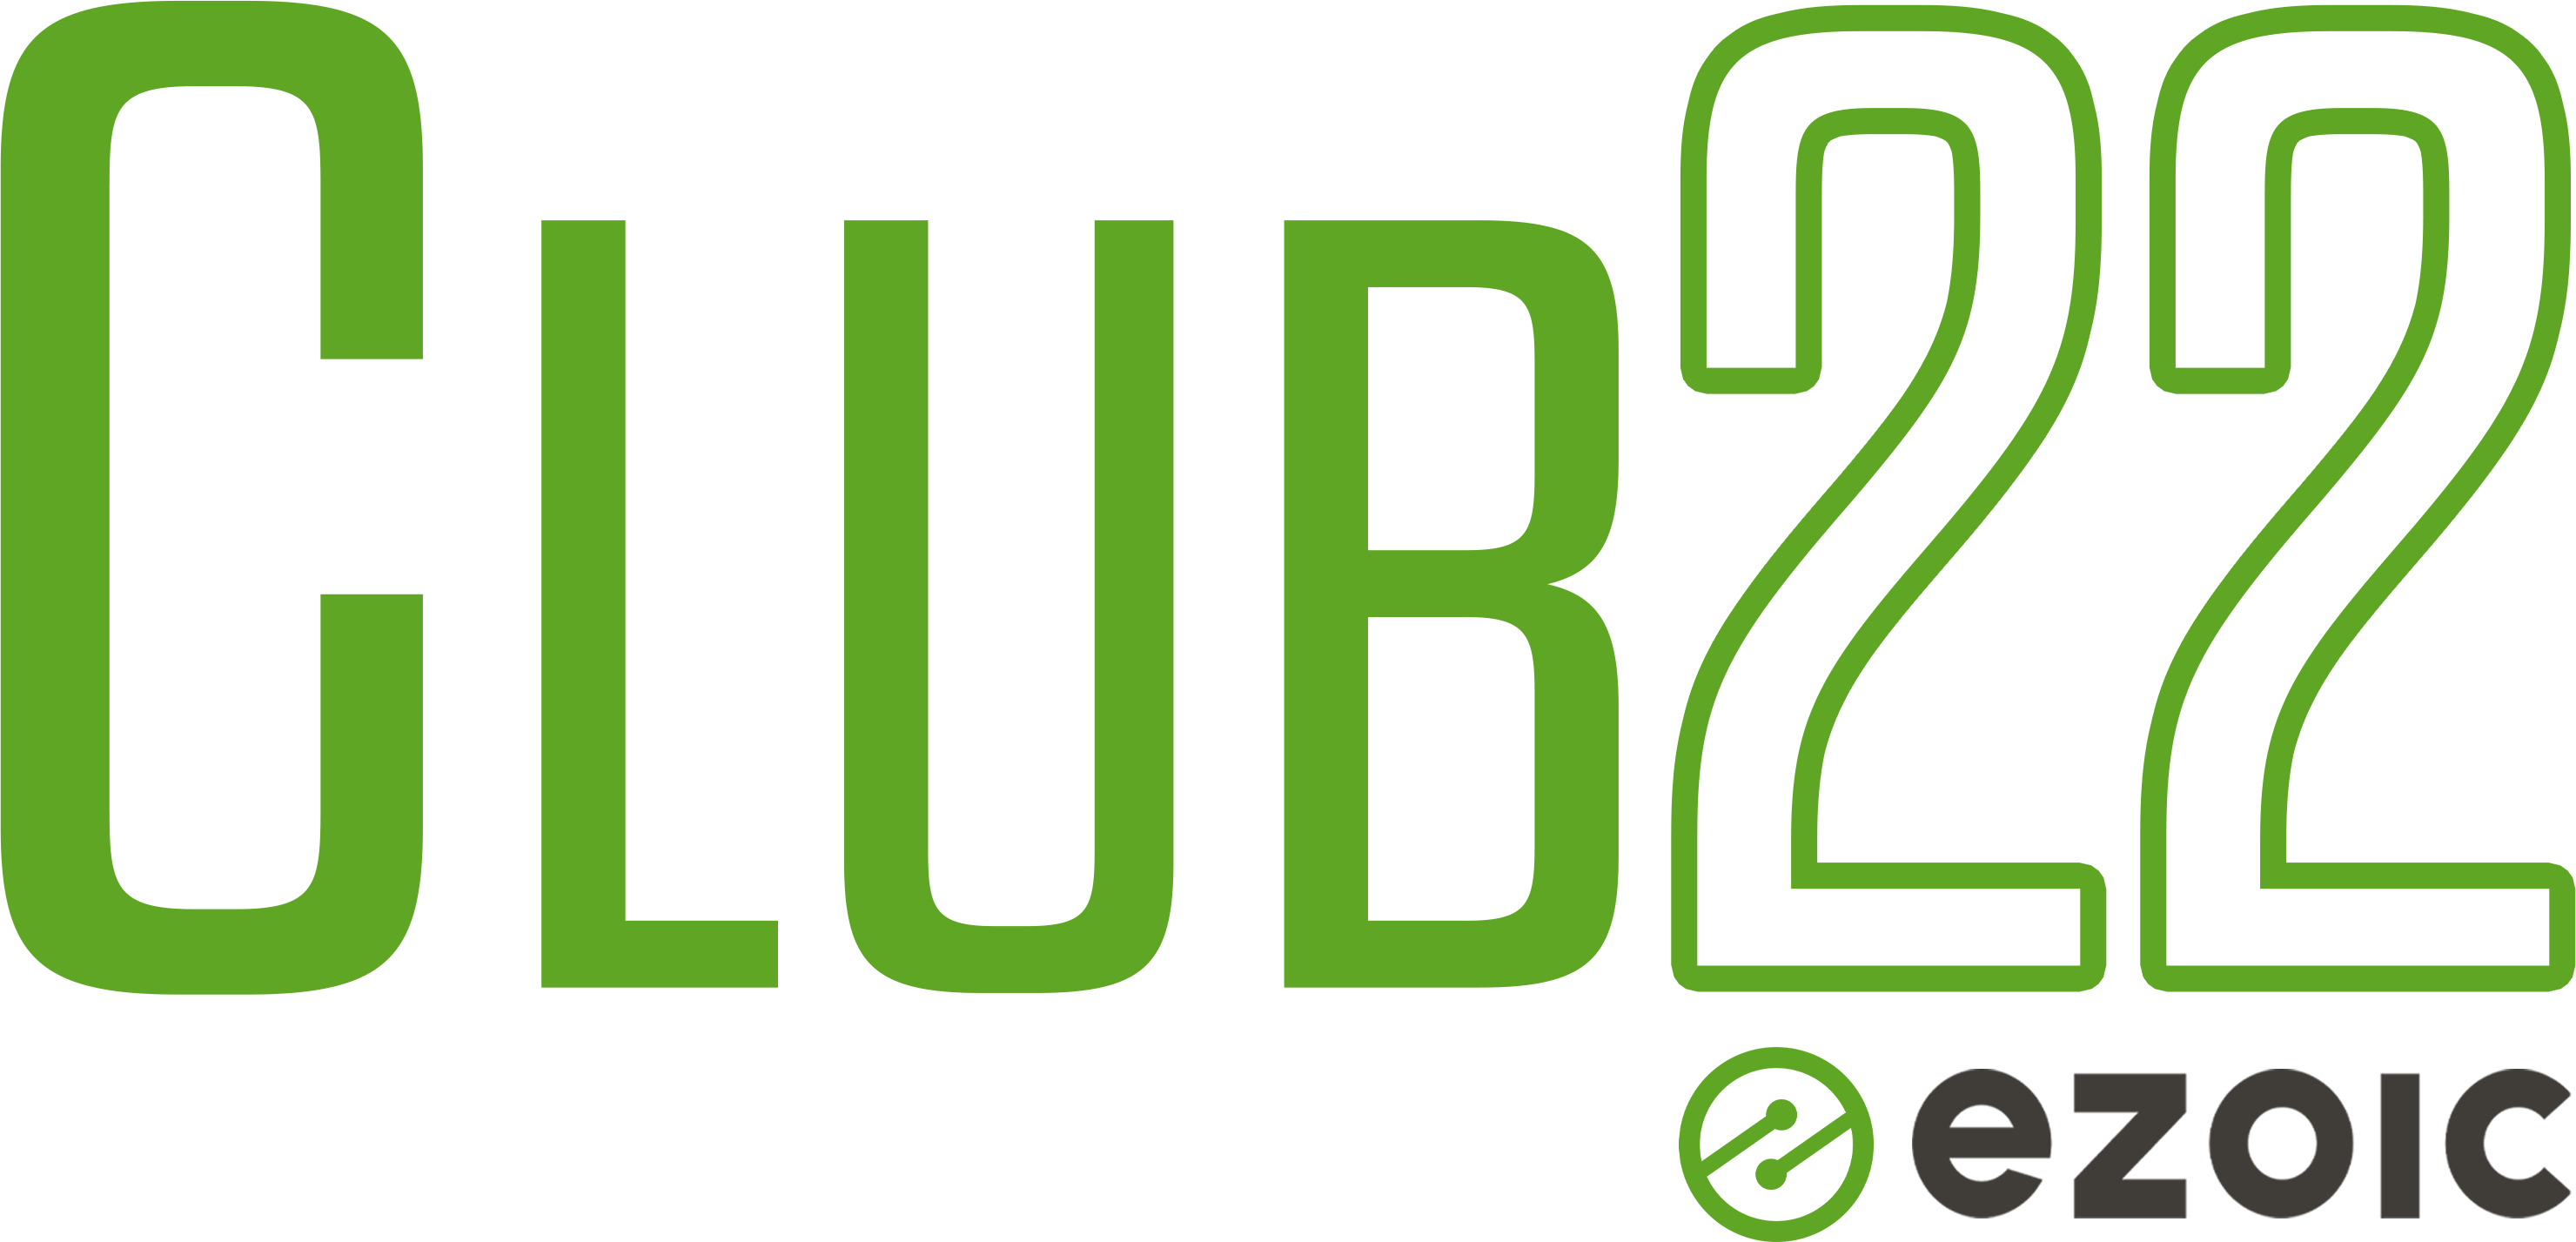 Club22 logo